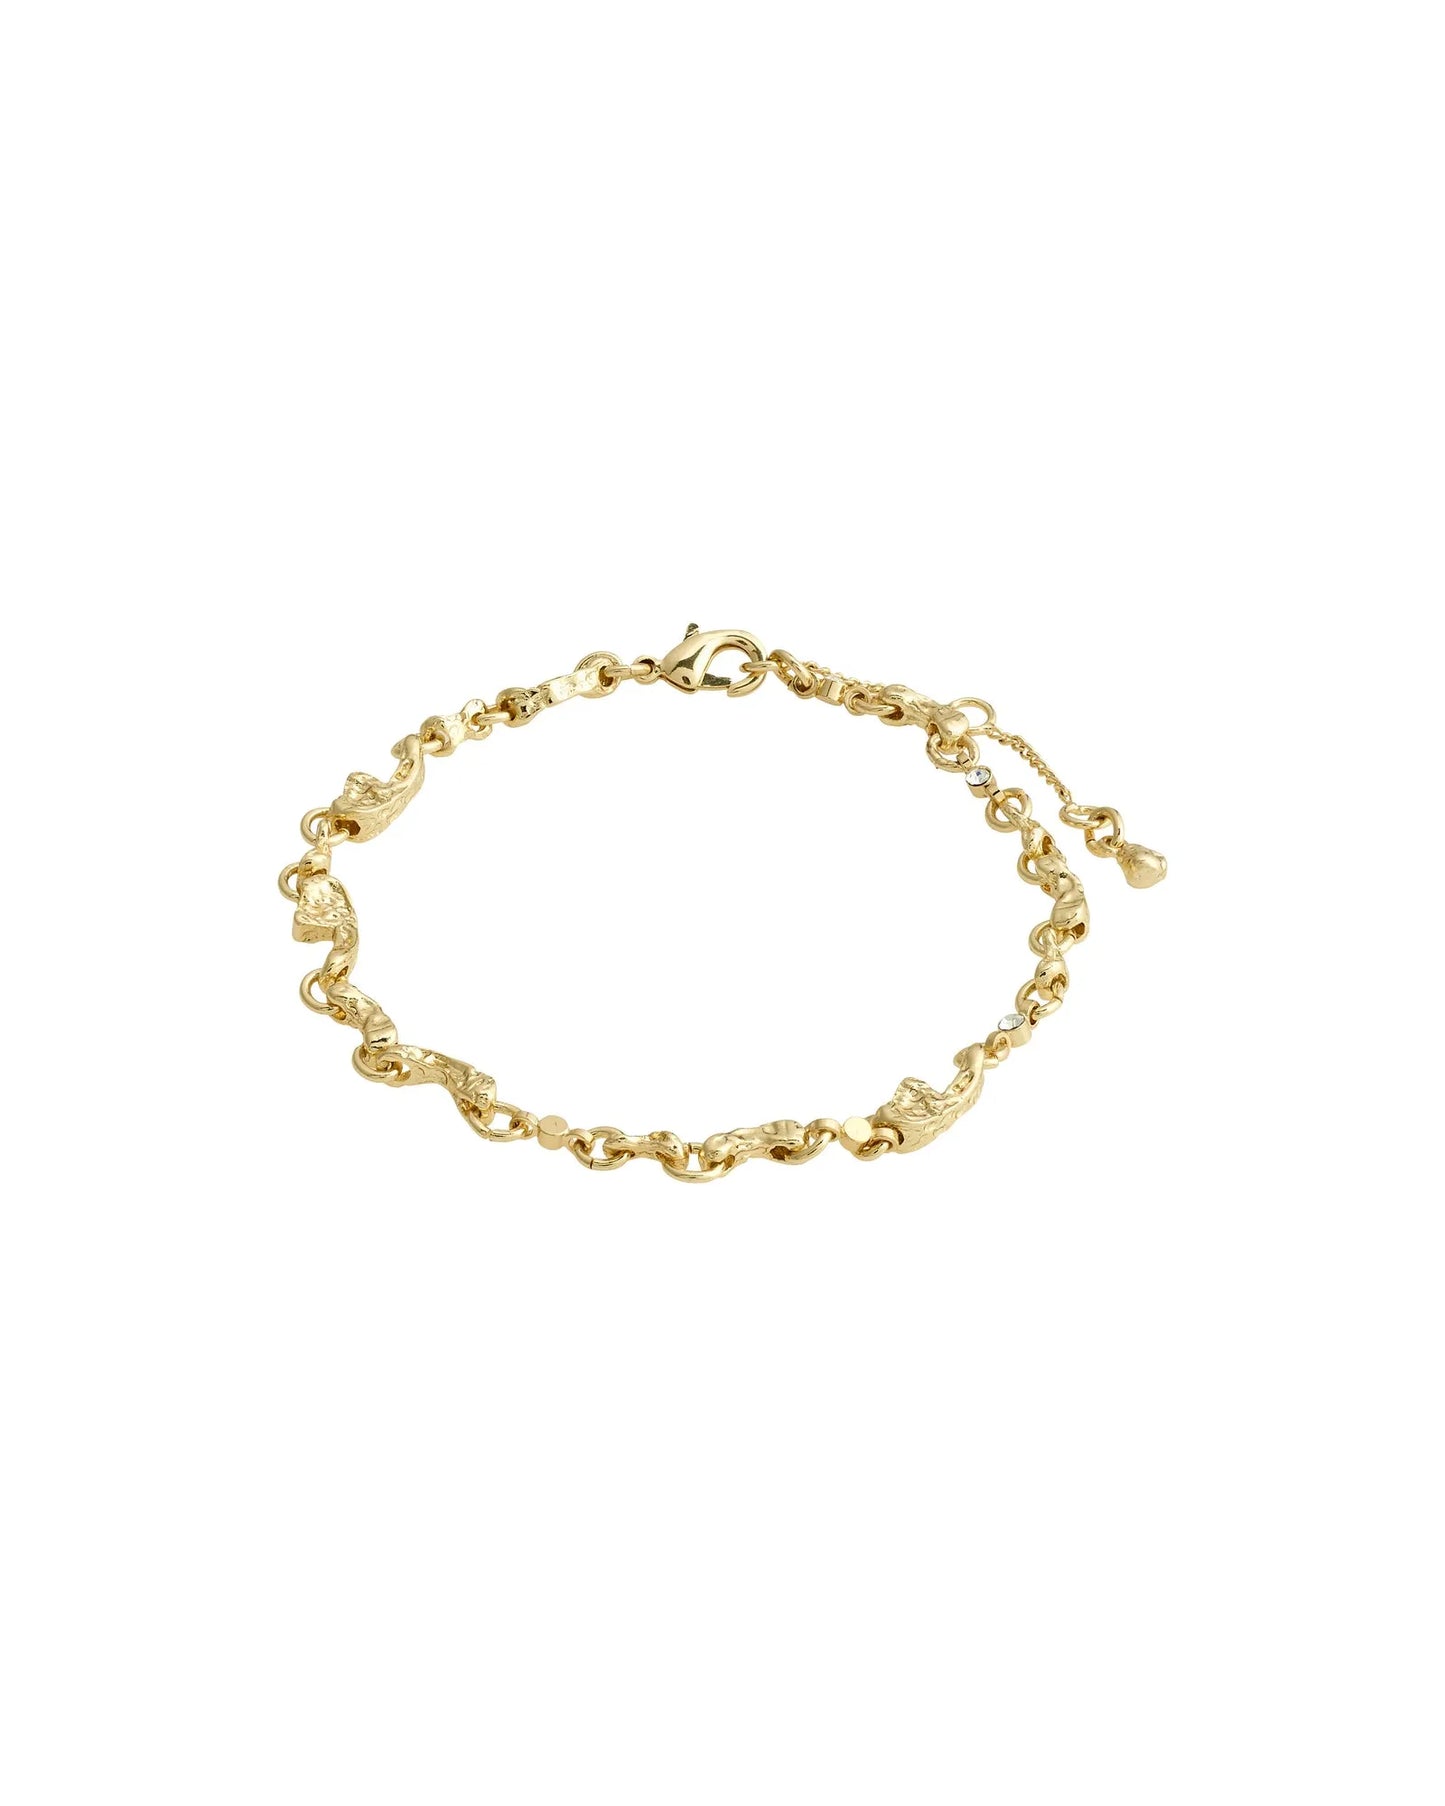 HALLIE Bracelet - Gold Plated